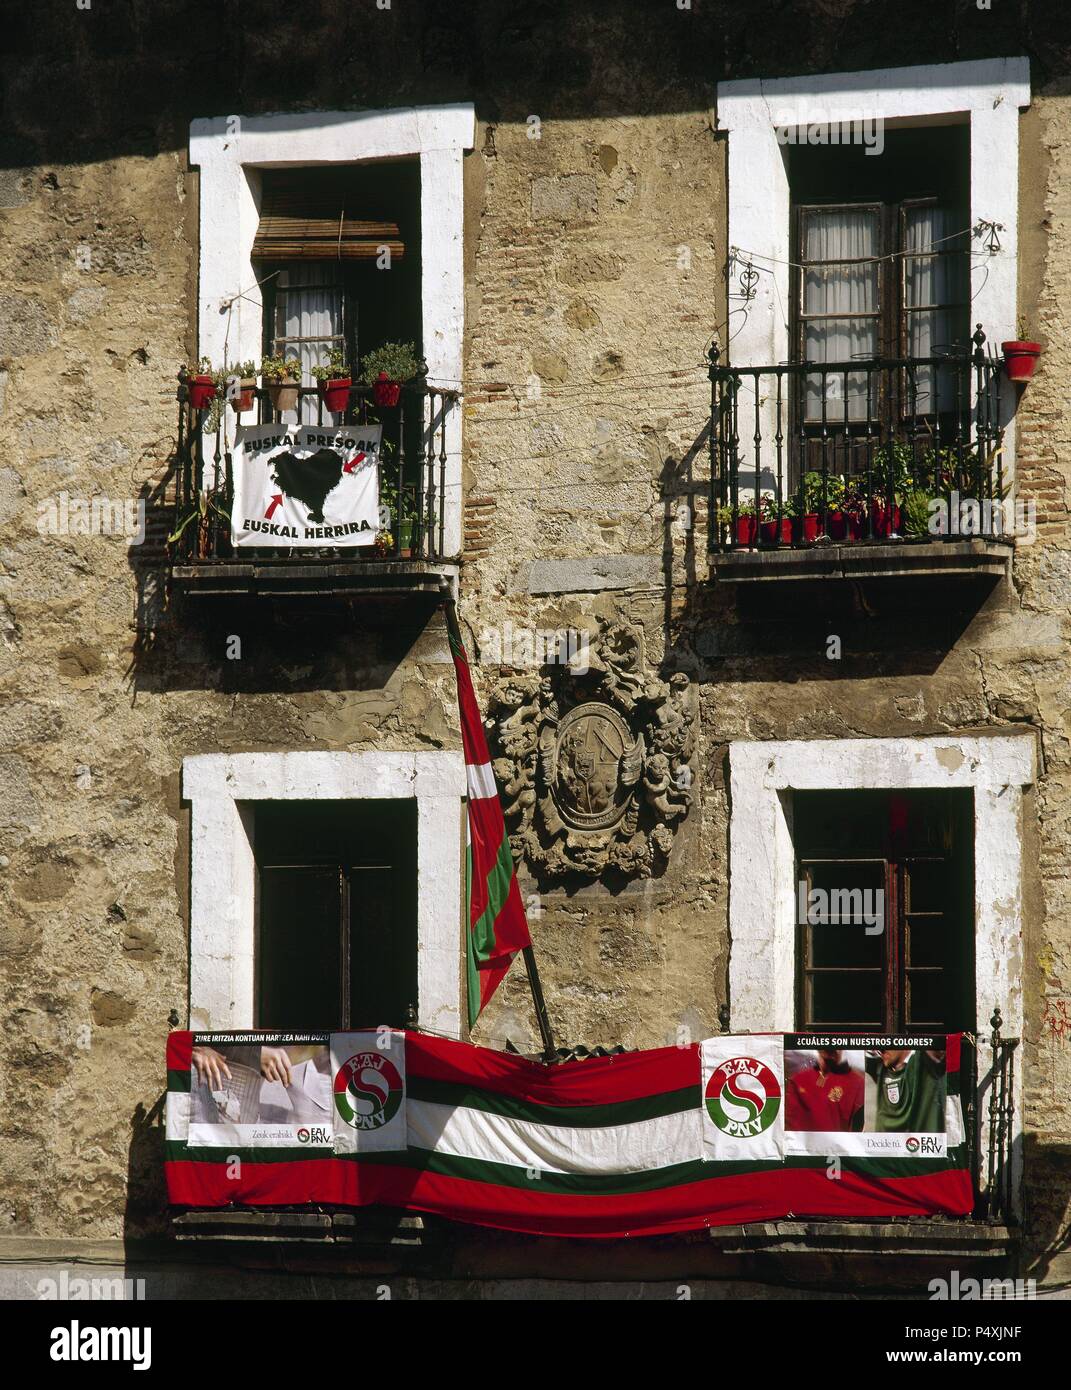 Spanien. Baskenland. Markina. Wahlen, 12. März 2000. Poster Baskischen Nationalistischen Partei (PNV) und Flagge. Balkon. Markina. Stockfoto